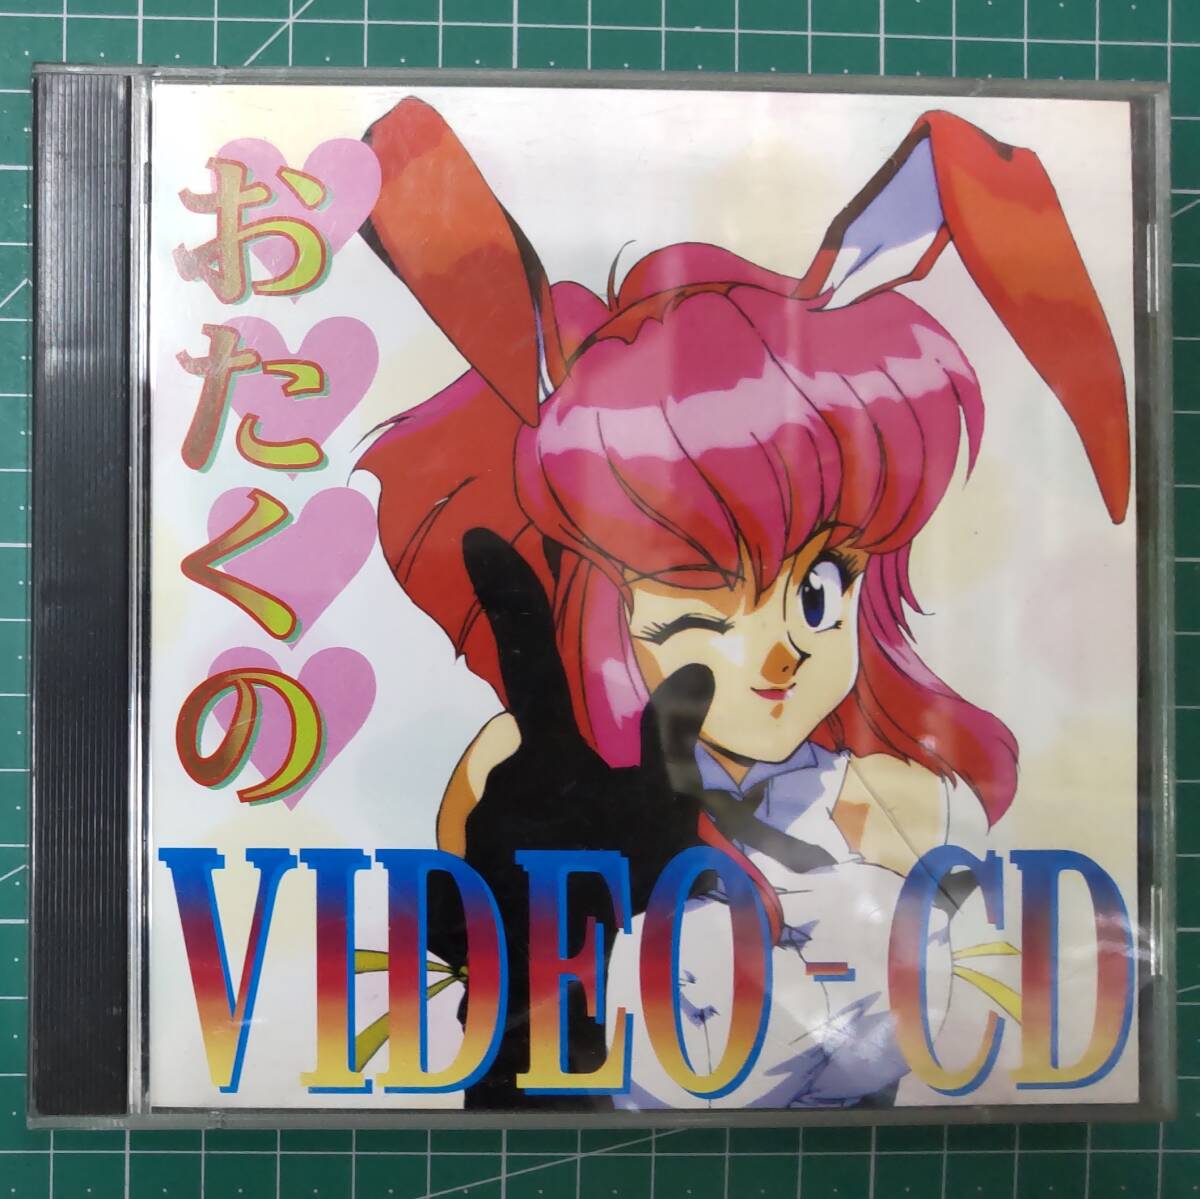 【帯付き】ビデオCD「おたくのVIDEO-CD」(おたくのビデオ1982、おたくのビデオ1985 収録) ガイナックス GVCD-004 園田健一●H3705の画像1